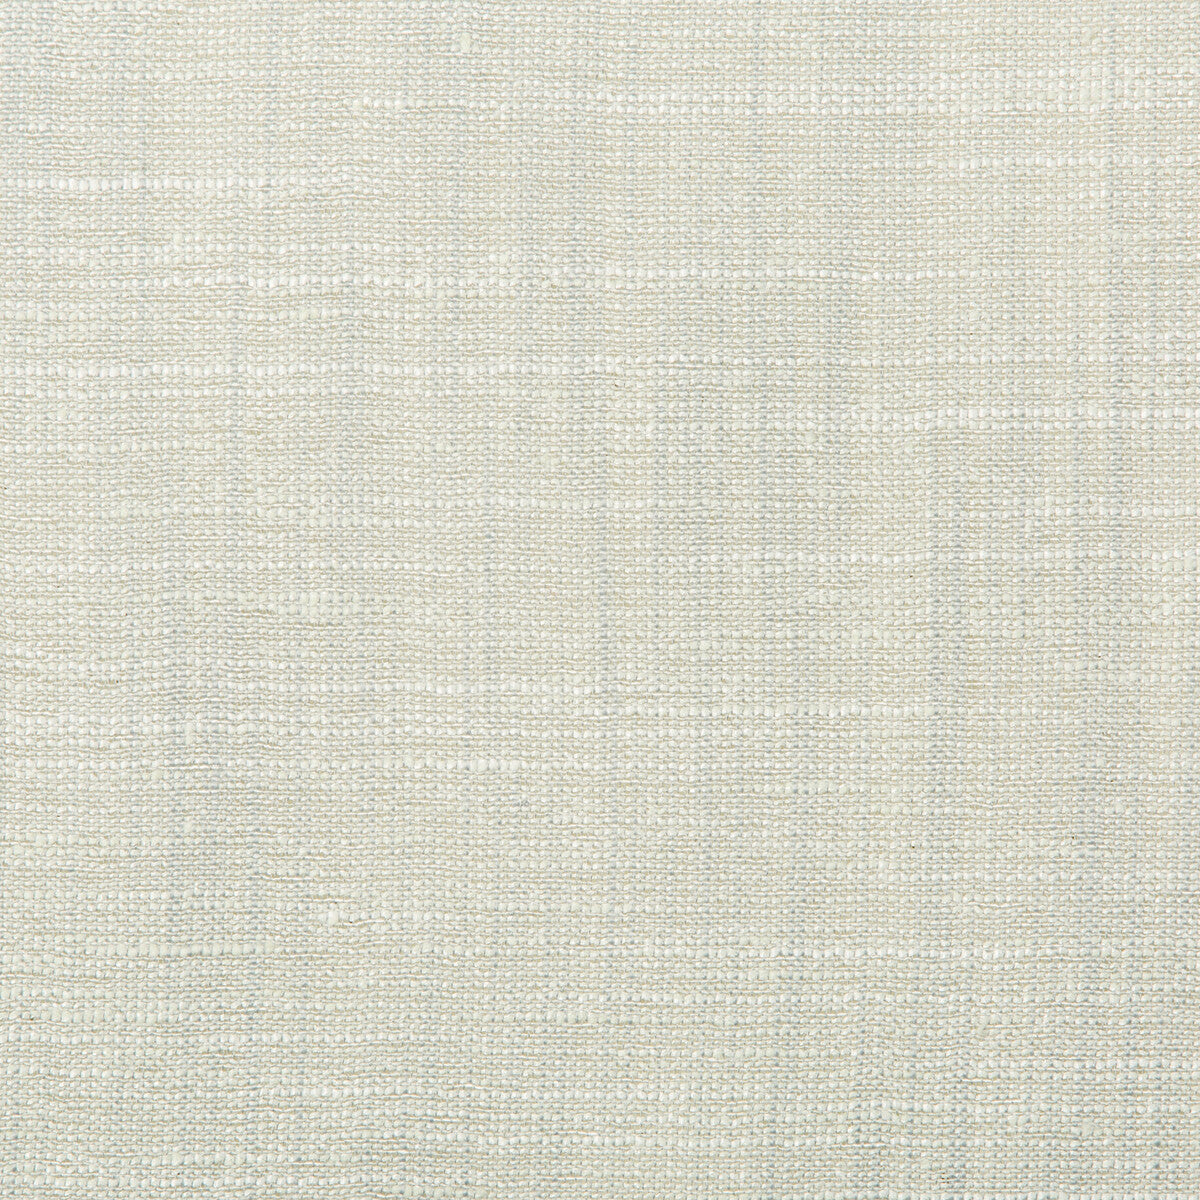 Kravet Basics fabric in 4664-13 color - pattern 4664.13.0 - by Kravet Basics